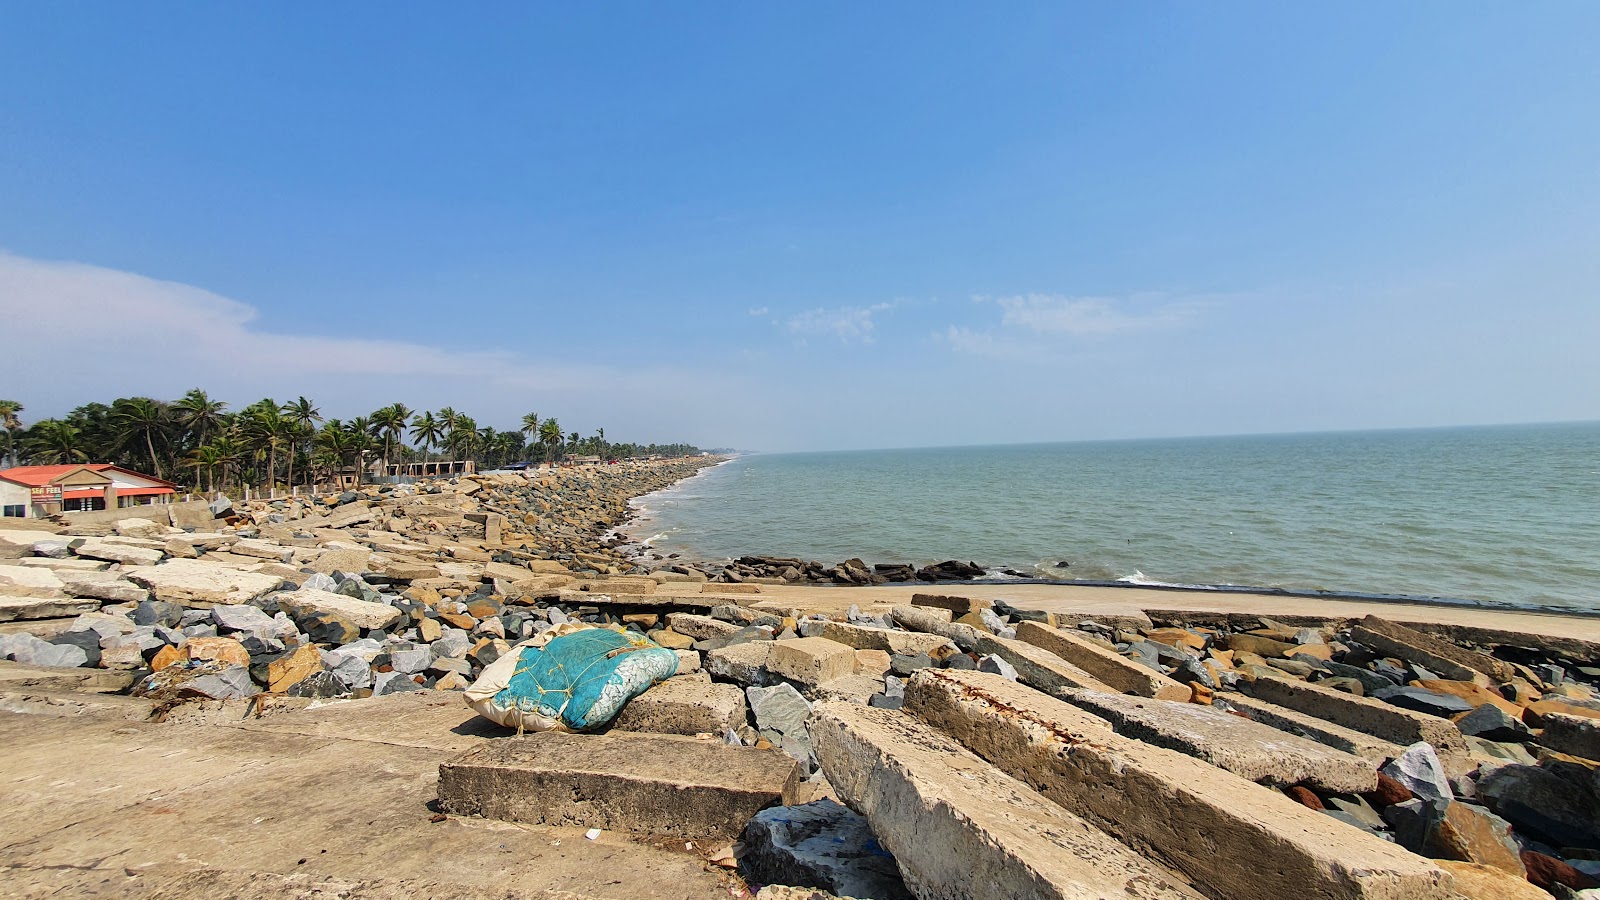 Foto de Shankarpur Sea Beach - recomendado para viajantes em família com crianças